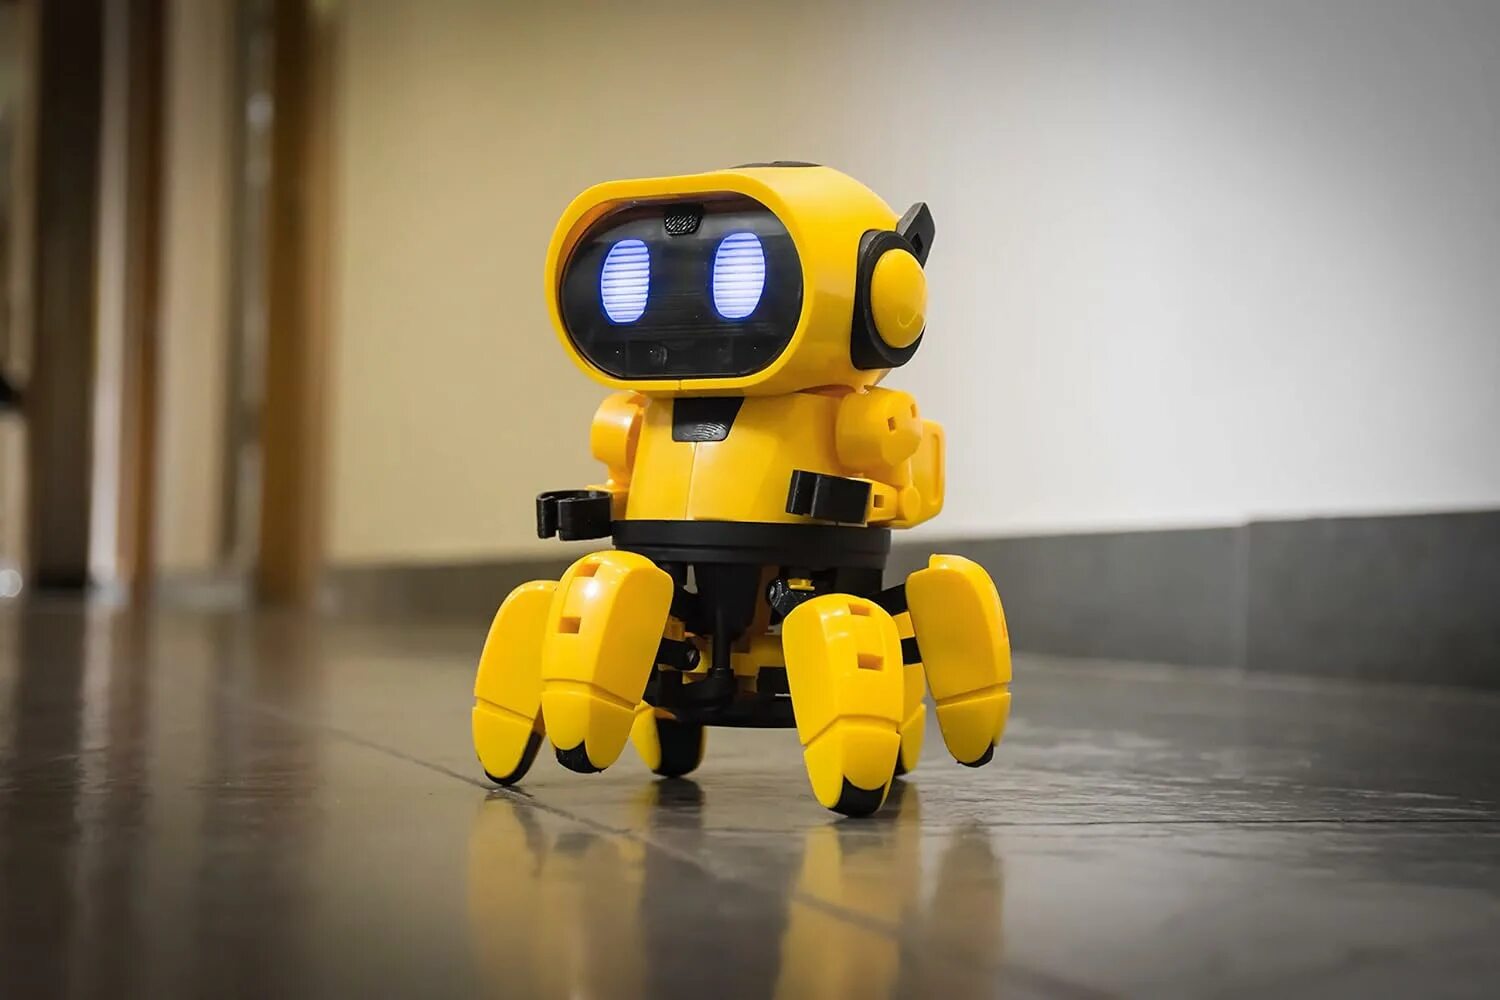 Тобби 2 робот. Желтый робот Тоби. Конструктор робототехника робот Железяка. Собака Тобби робот. Включи игрушки роботы новые